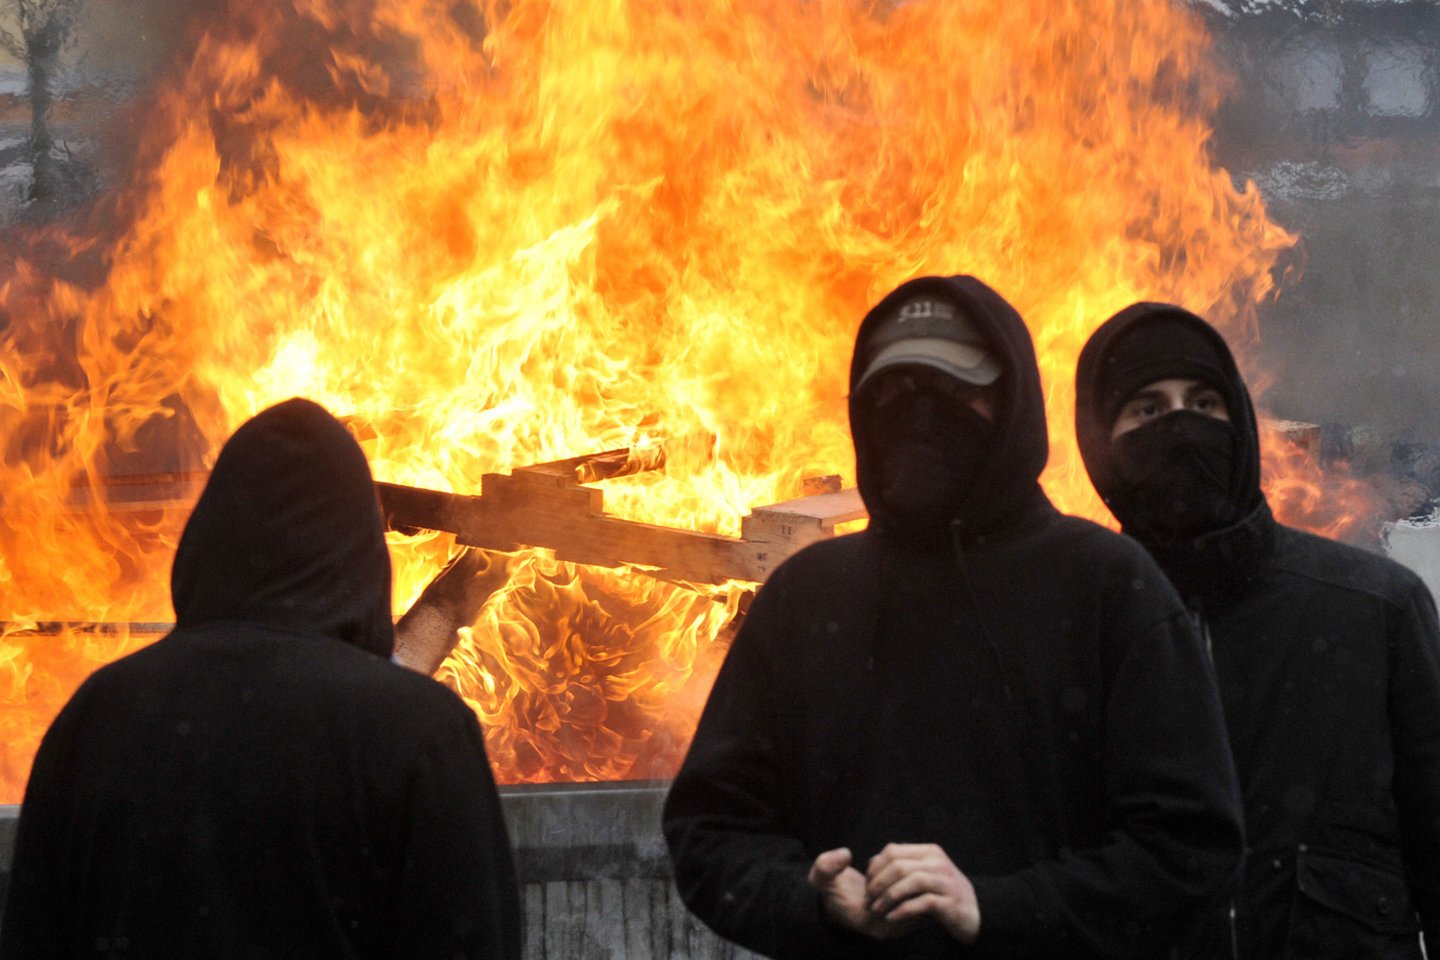 Visame pasaulyje neonacių grupuotės pritraukia jaunus ir pažeidžiamus žmones.<br> AFP/Scanpix nuotr.